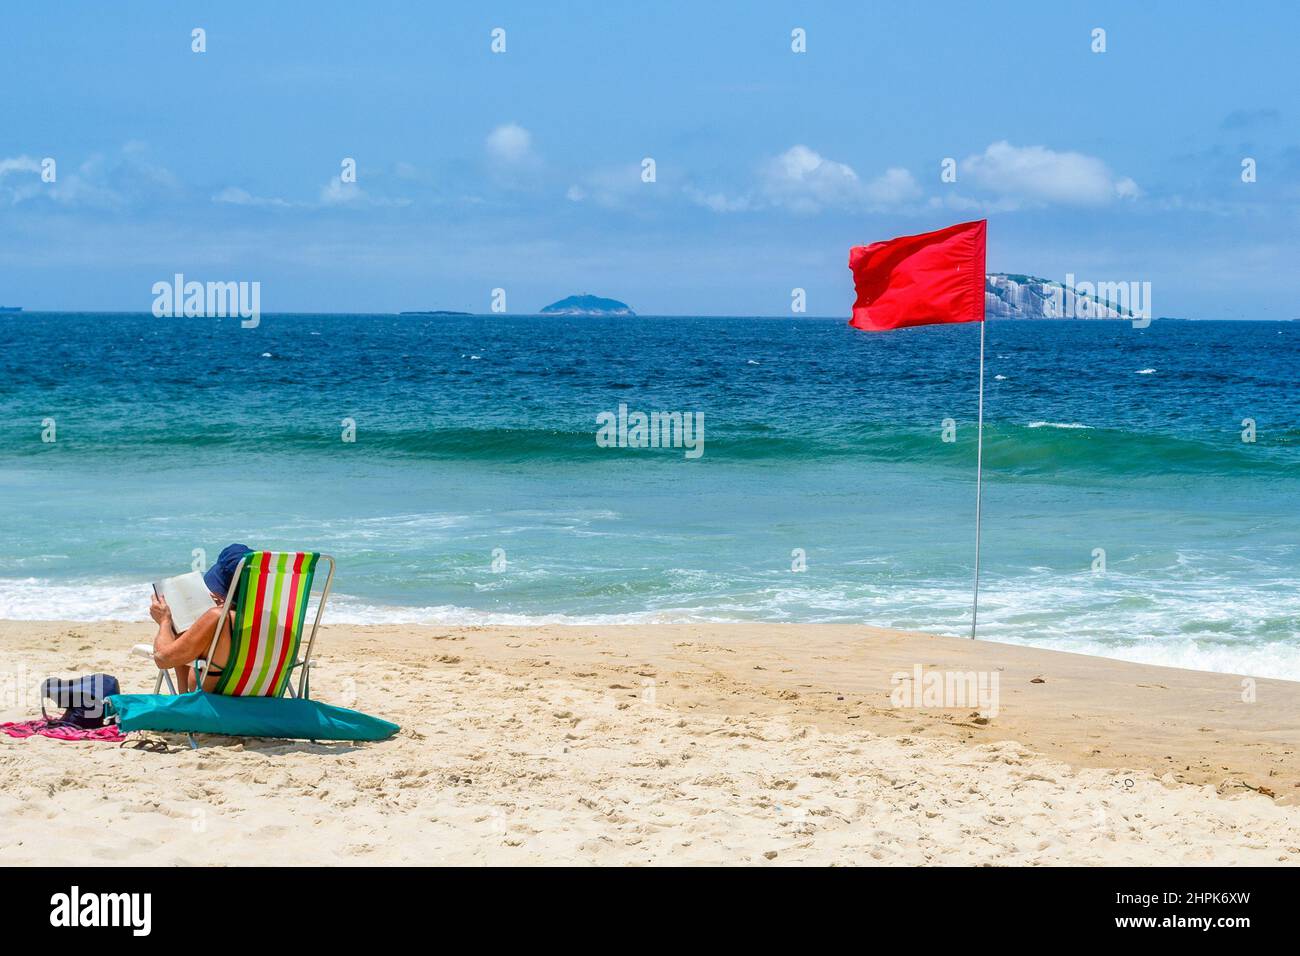 Un touriste dans une chaise dans le sable par un drapeau rouge. Ipanema Beach est un endroit célèbre et une destination de voyage majeure dans le pays sud-américain. Banque D'Images